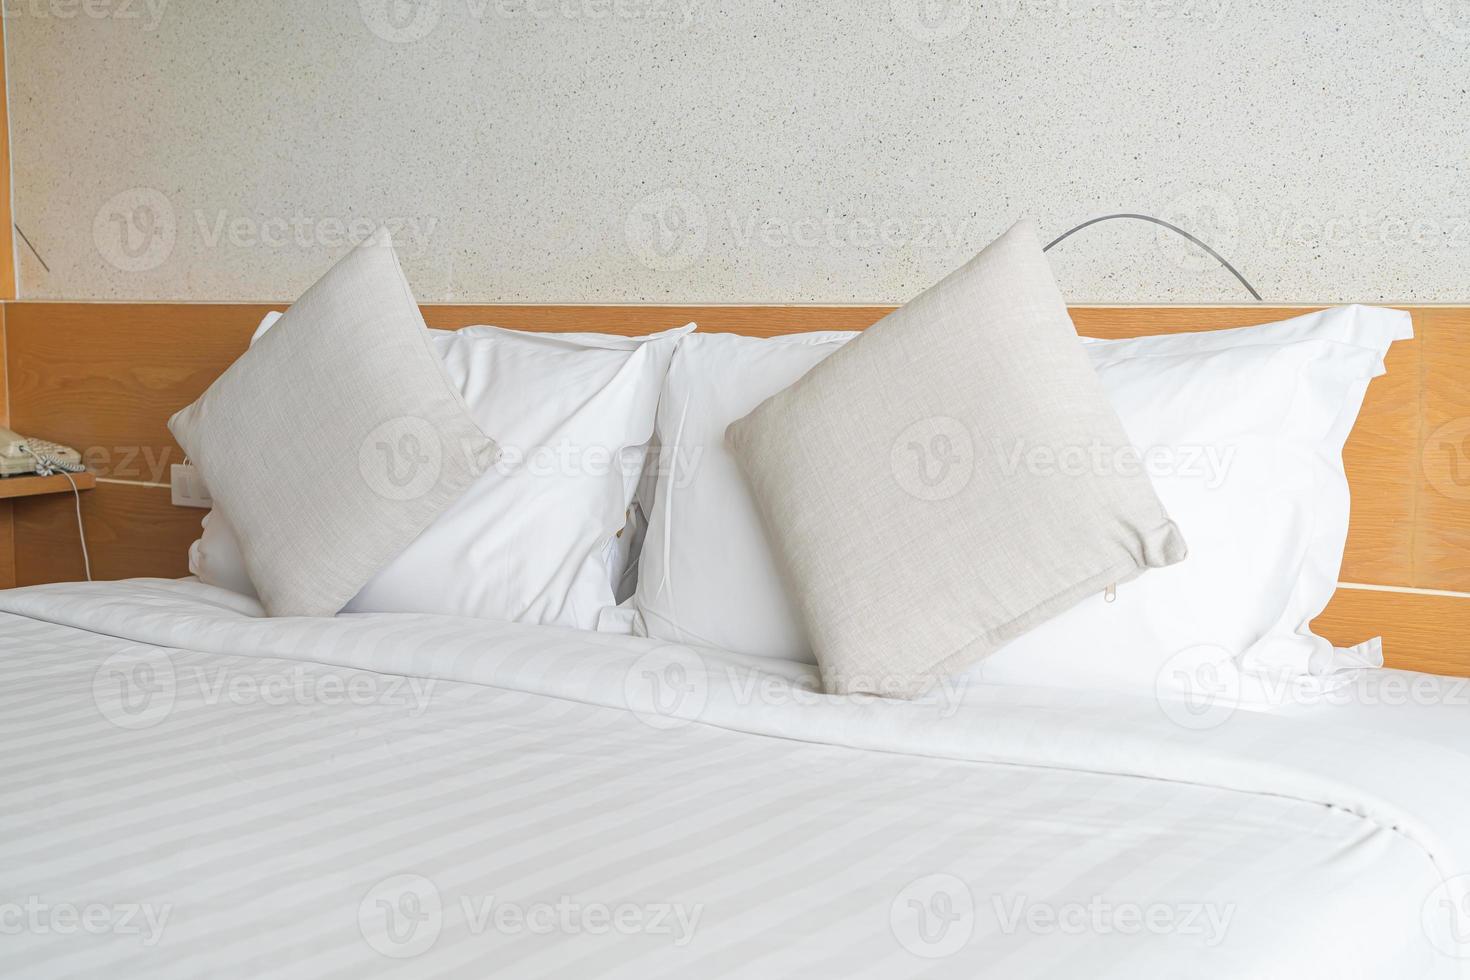 hermosa y cómoda decoración de almohadas en la cama foto